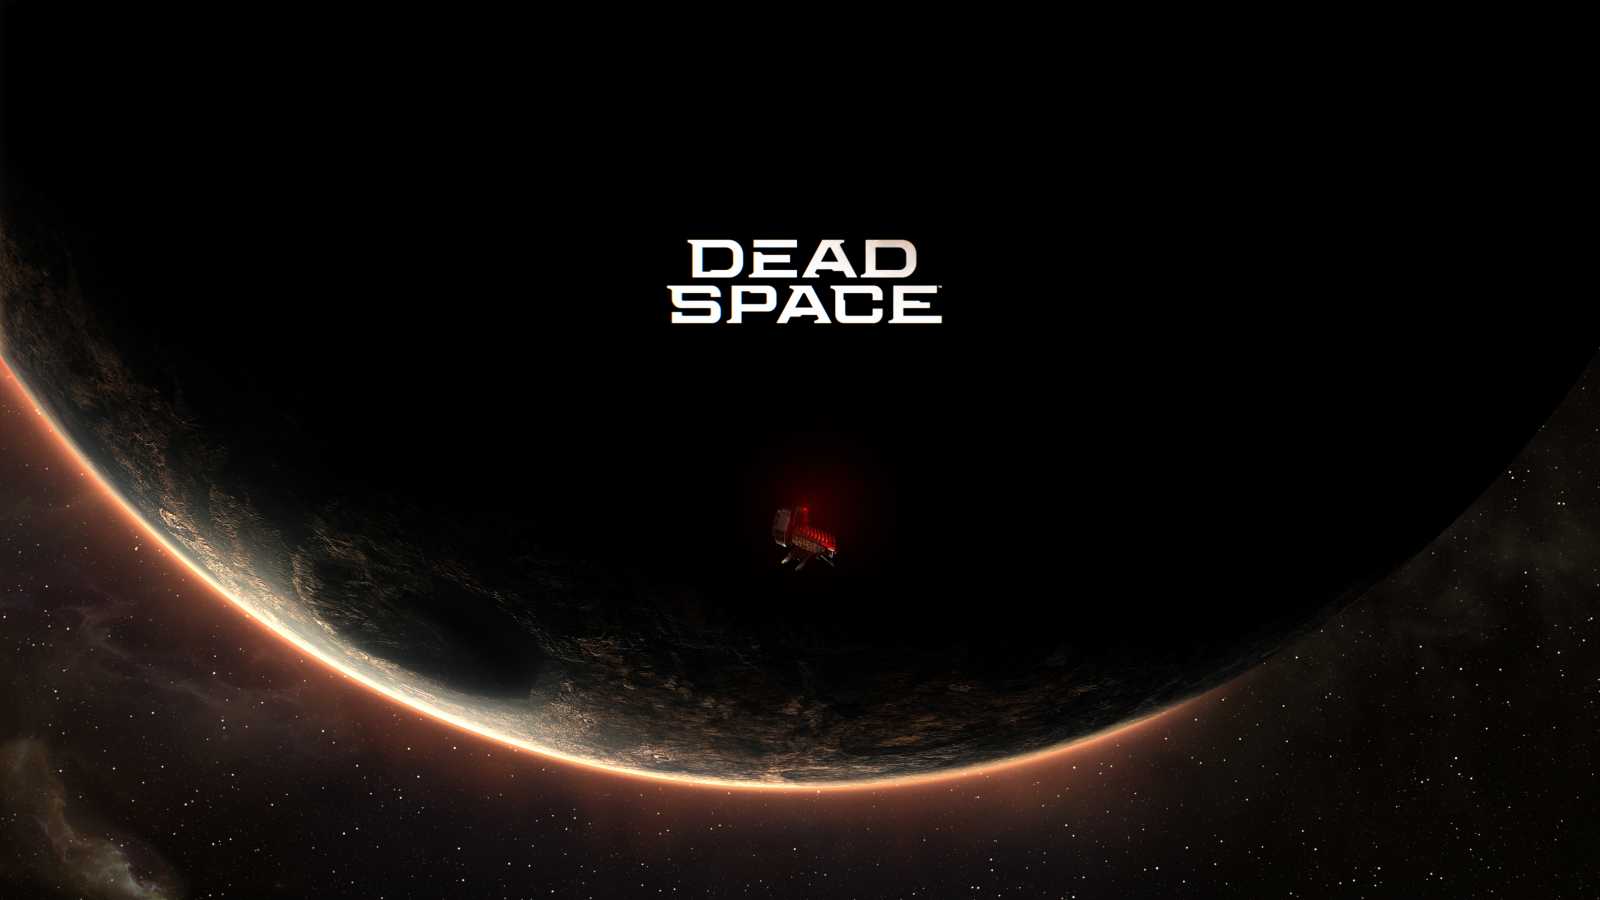 Další prezentace k remaku Dead Space je naplánovaná na květen. Bude se věnovat výtvarnému zpracování